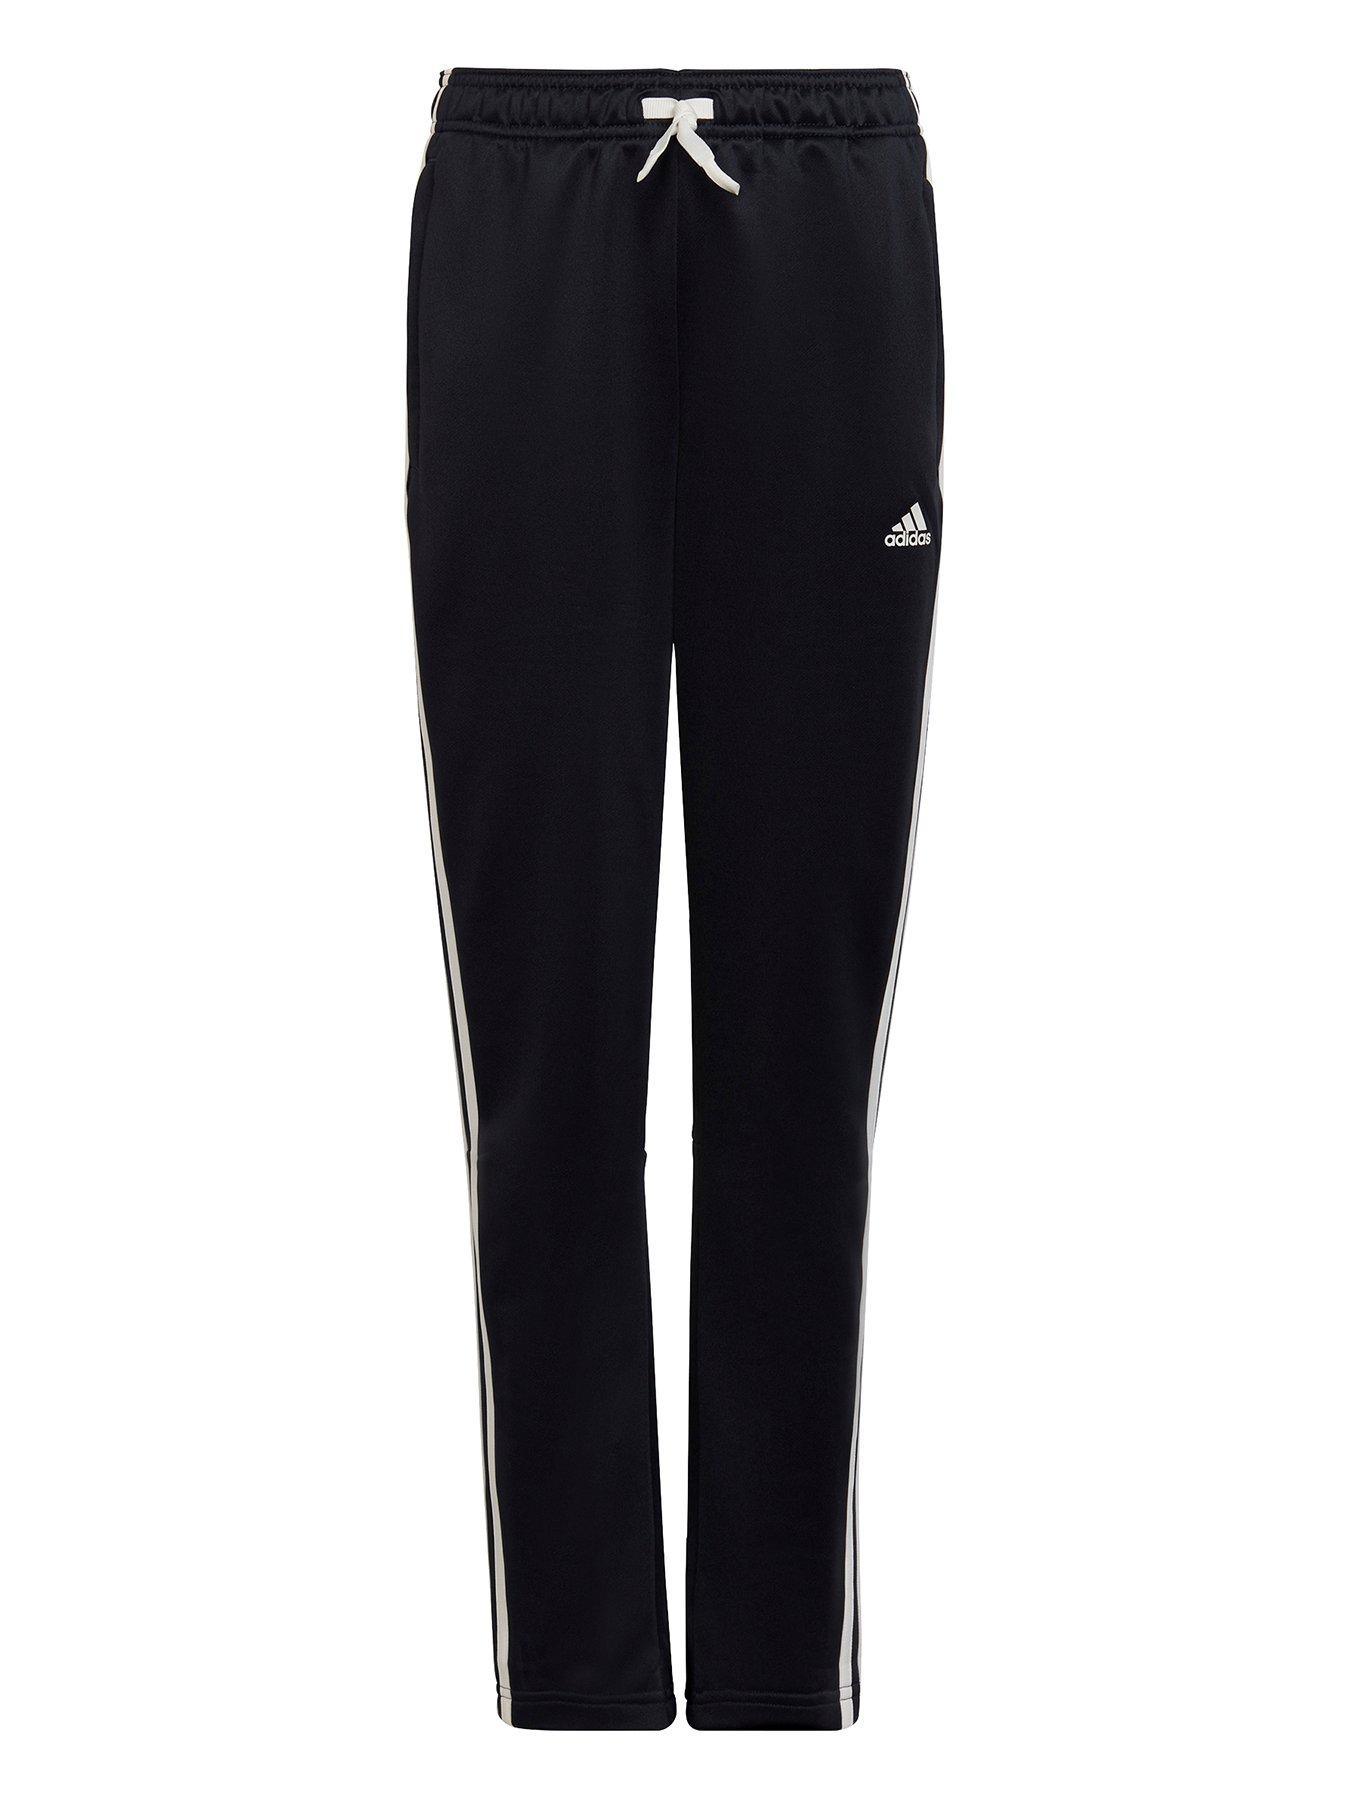 Sportswear Older Girls 3 Stripe Pants - Black